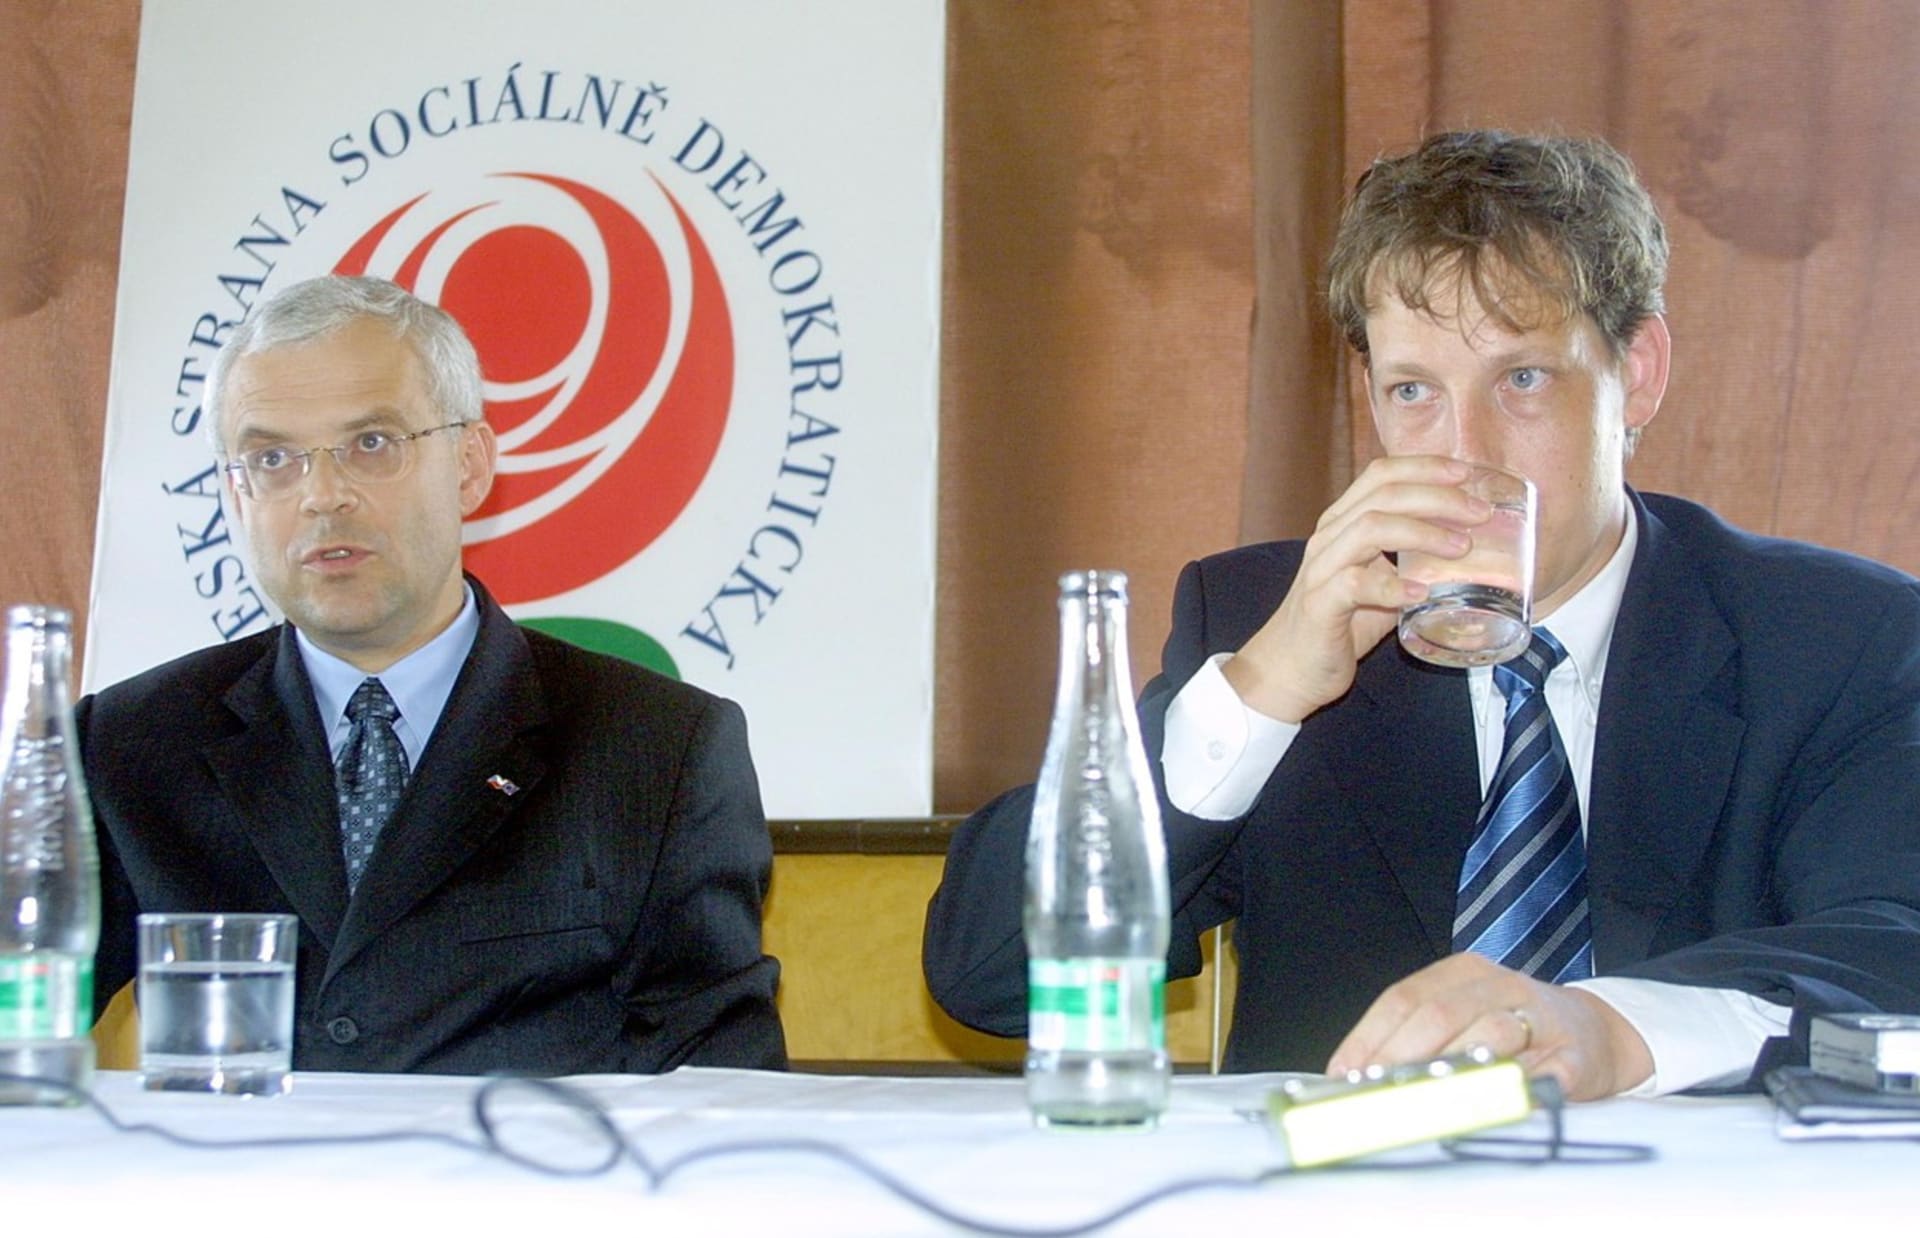 Vladimír Špidla a Stanislav Gross na zasedání strany